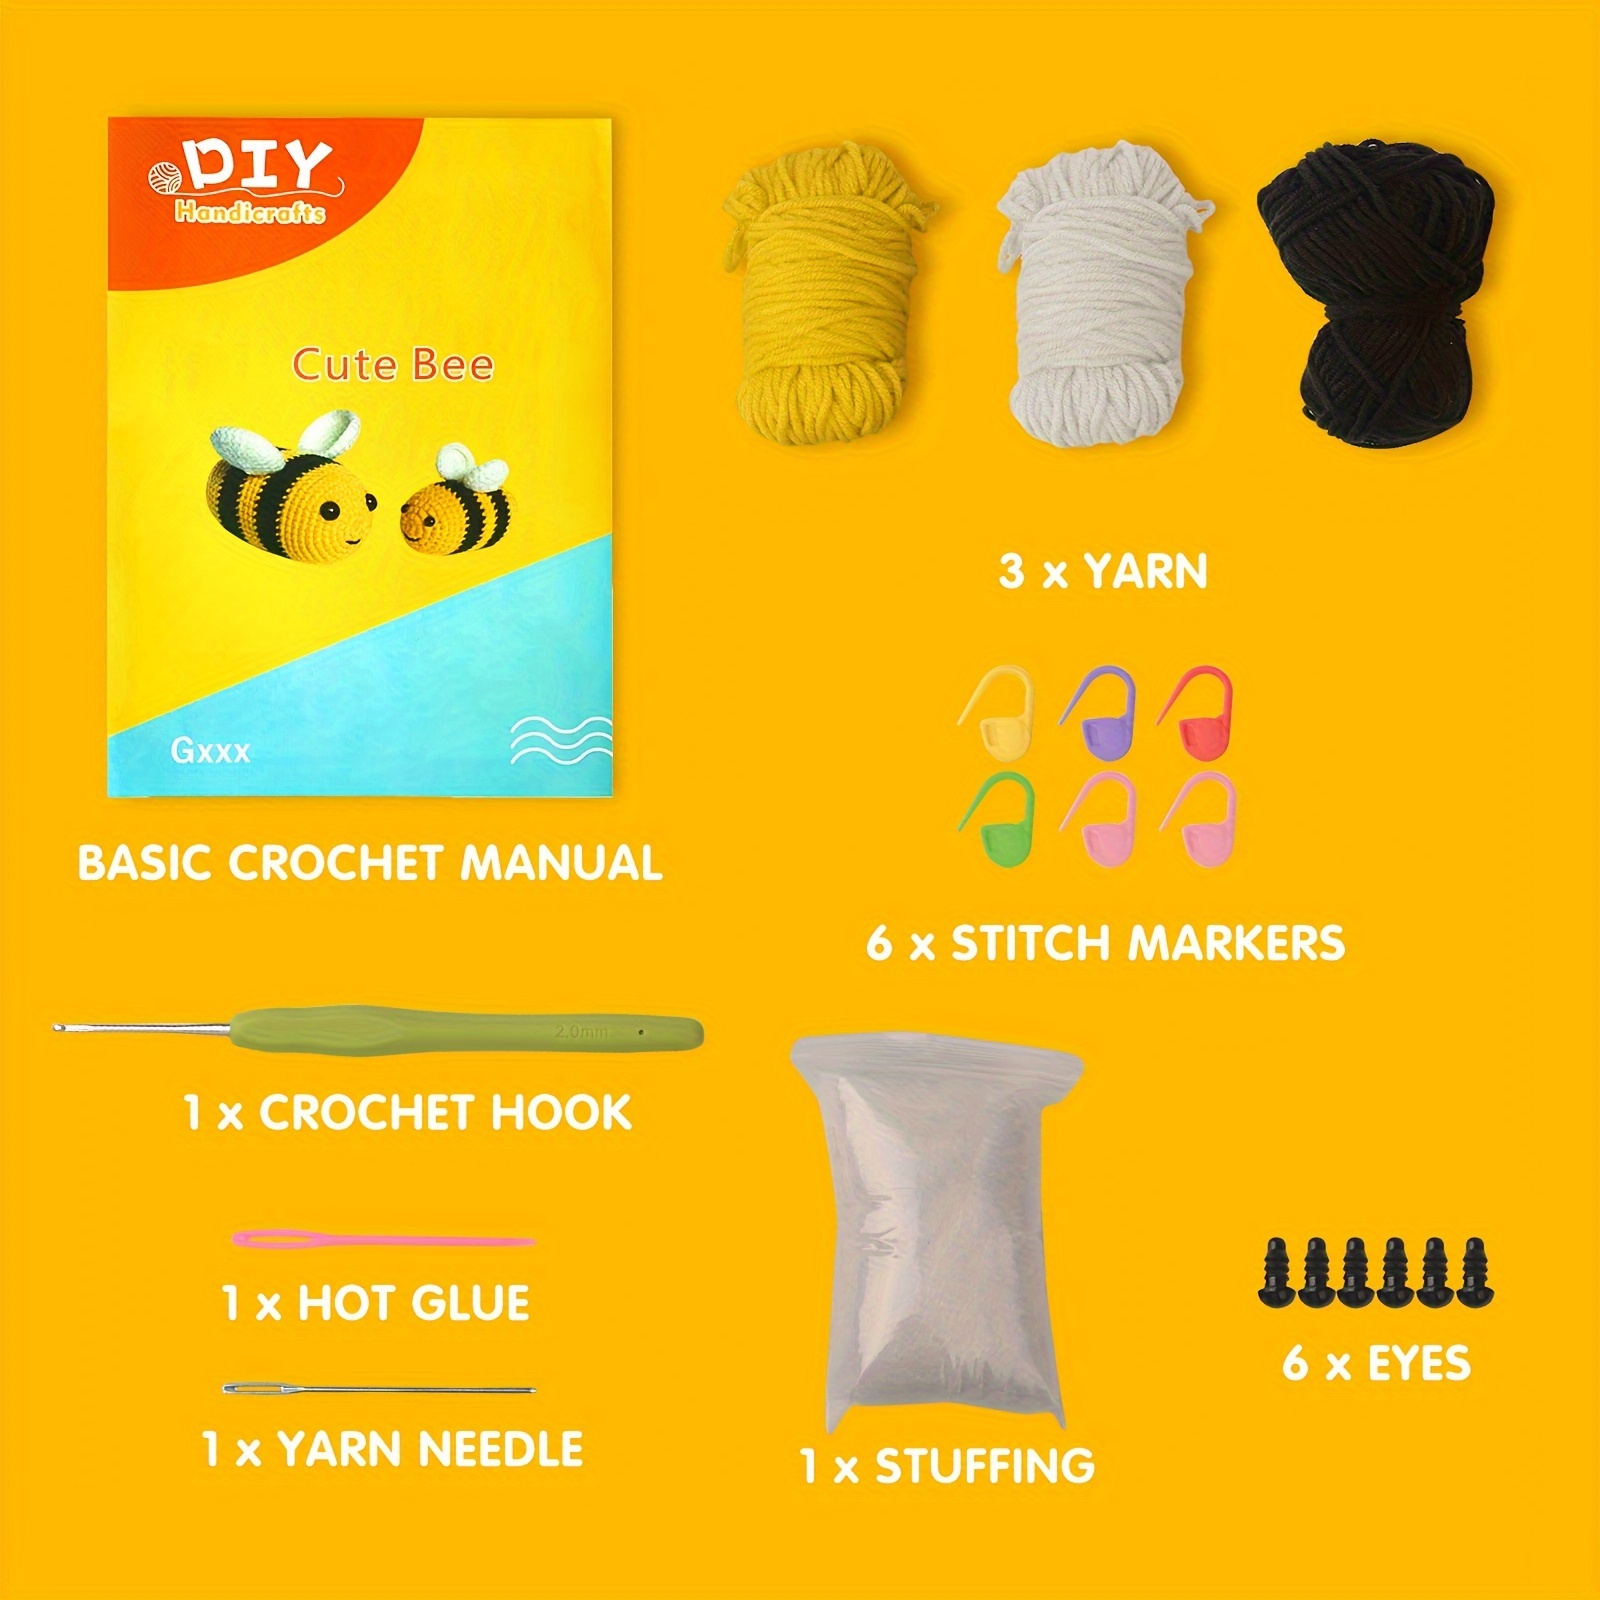 Crochet Kit for Beginners,Crochet Kit for Adults Kids Beginners, Other